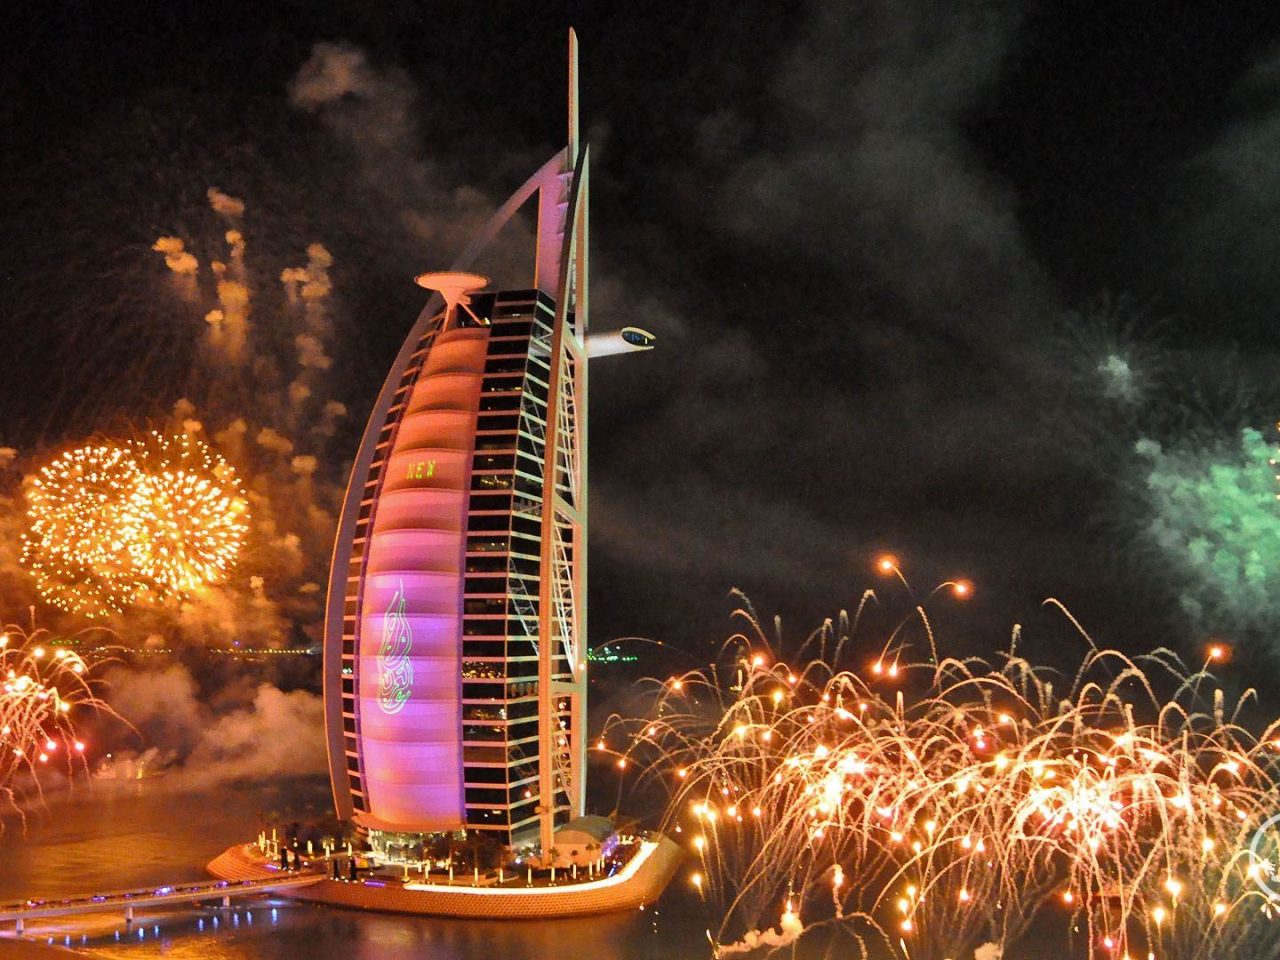 hd araba wallpaper,fuegos artificiales,día de año nuevo,evento,rascacielos,noche